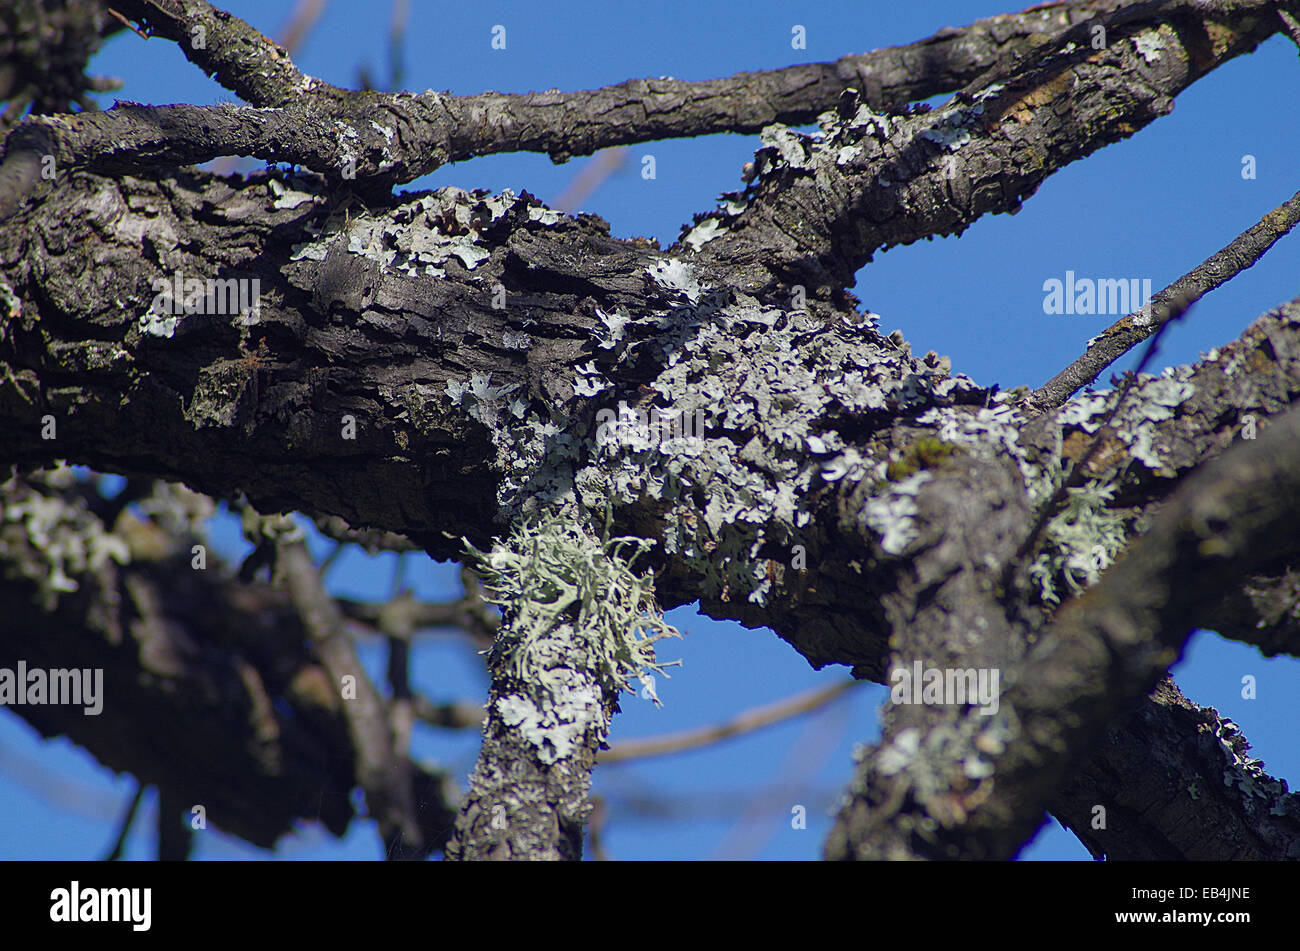 Lichen on fruit tree. Dangerous disease in trees. Stock Photo